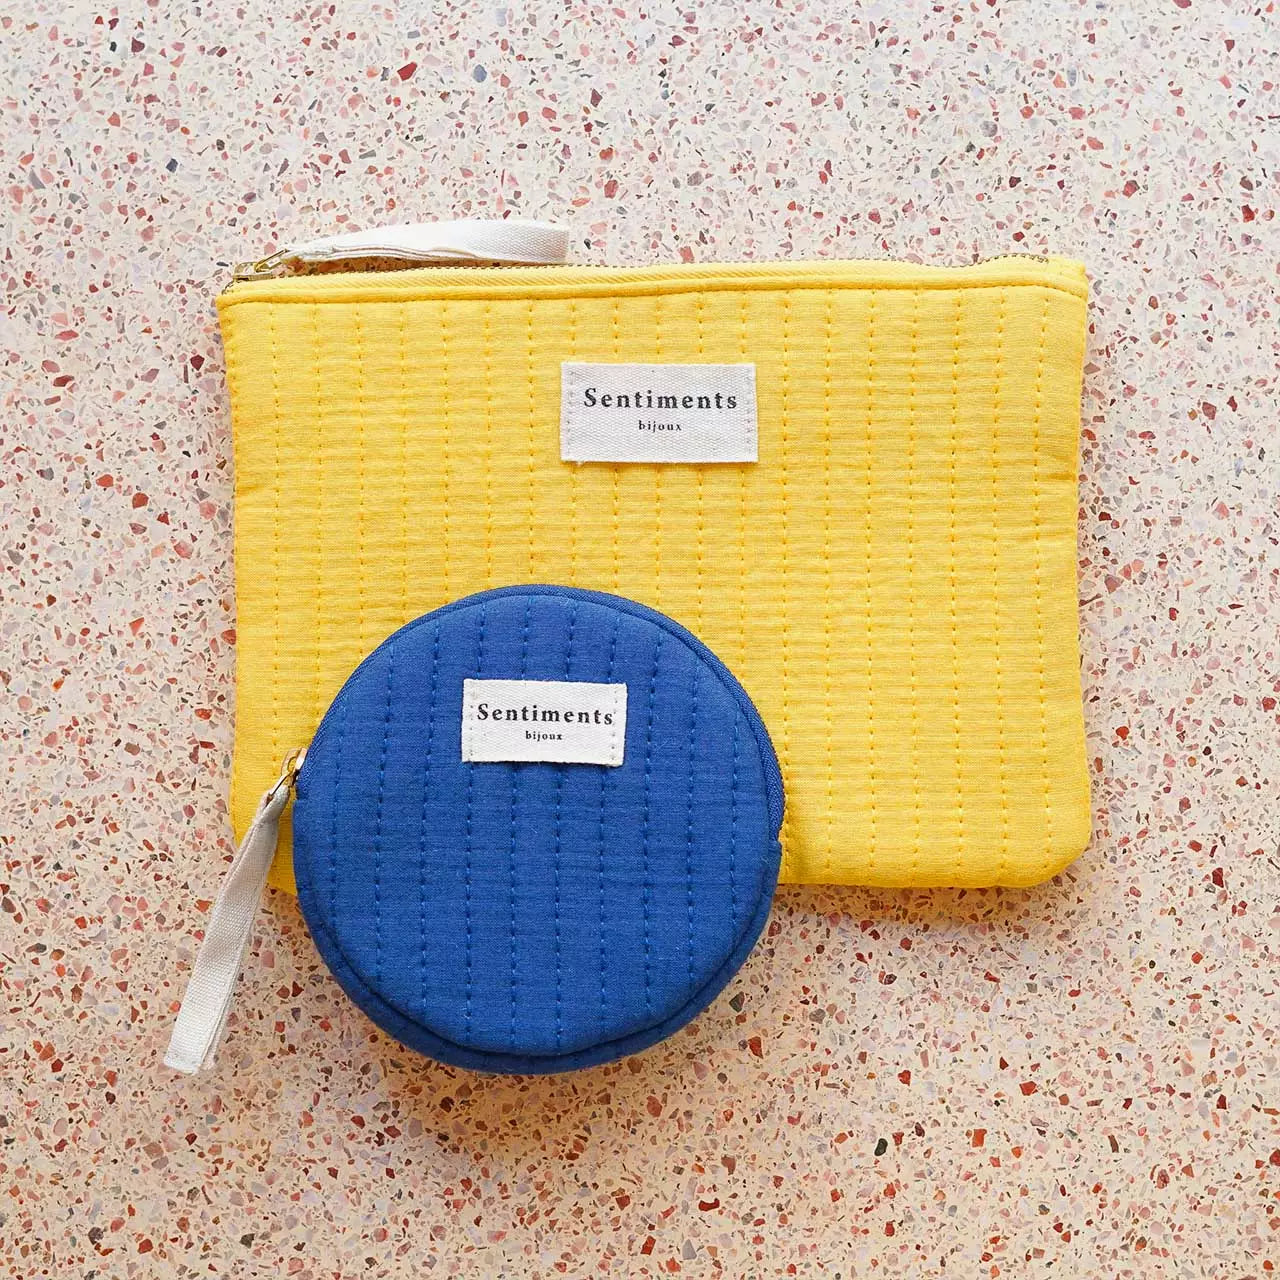 Pochettes matellassée jaune soleil en coton et une pochettes bleue matelassée ronde